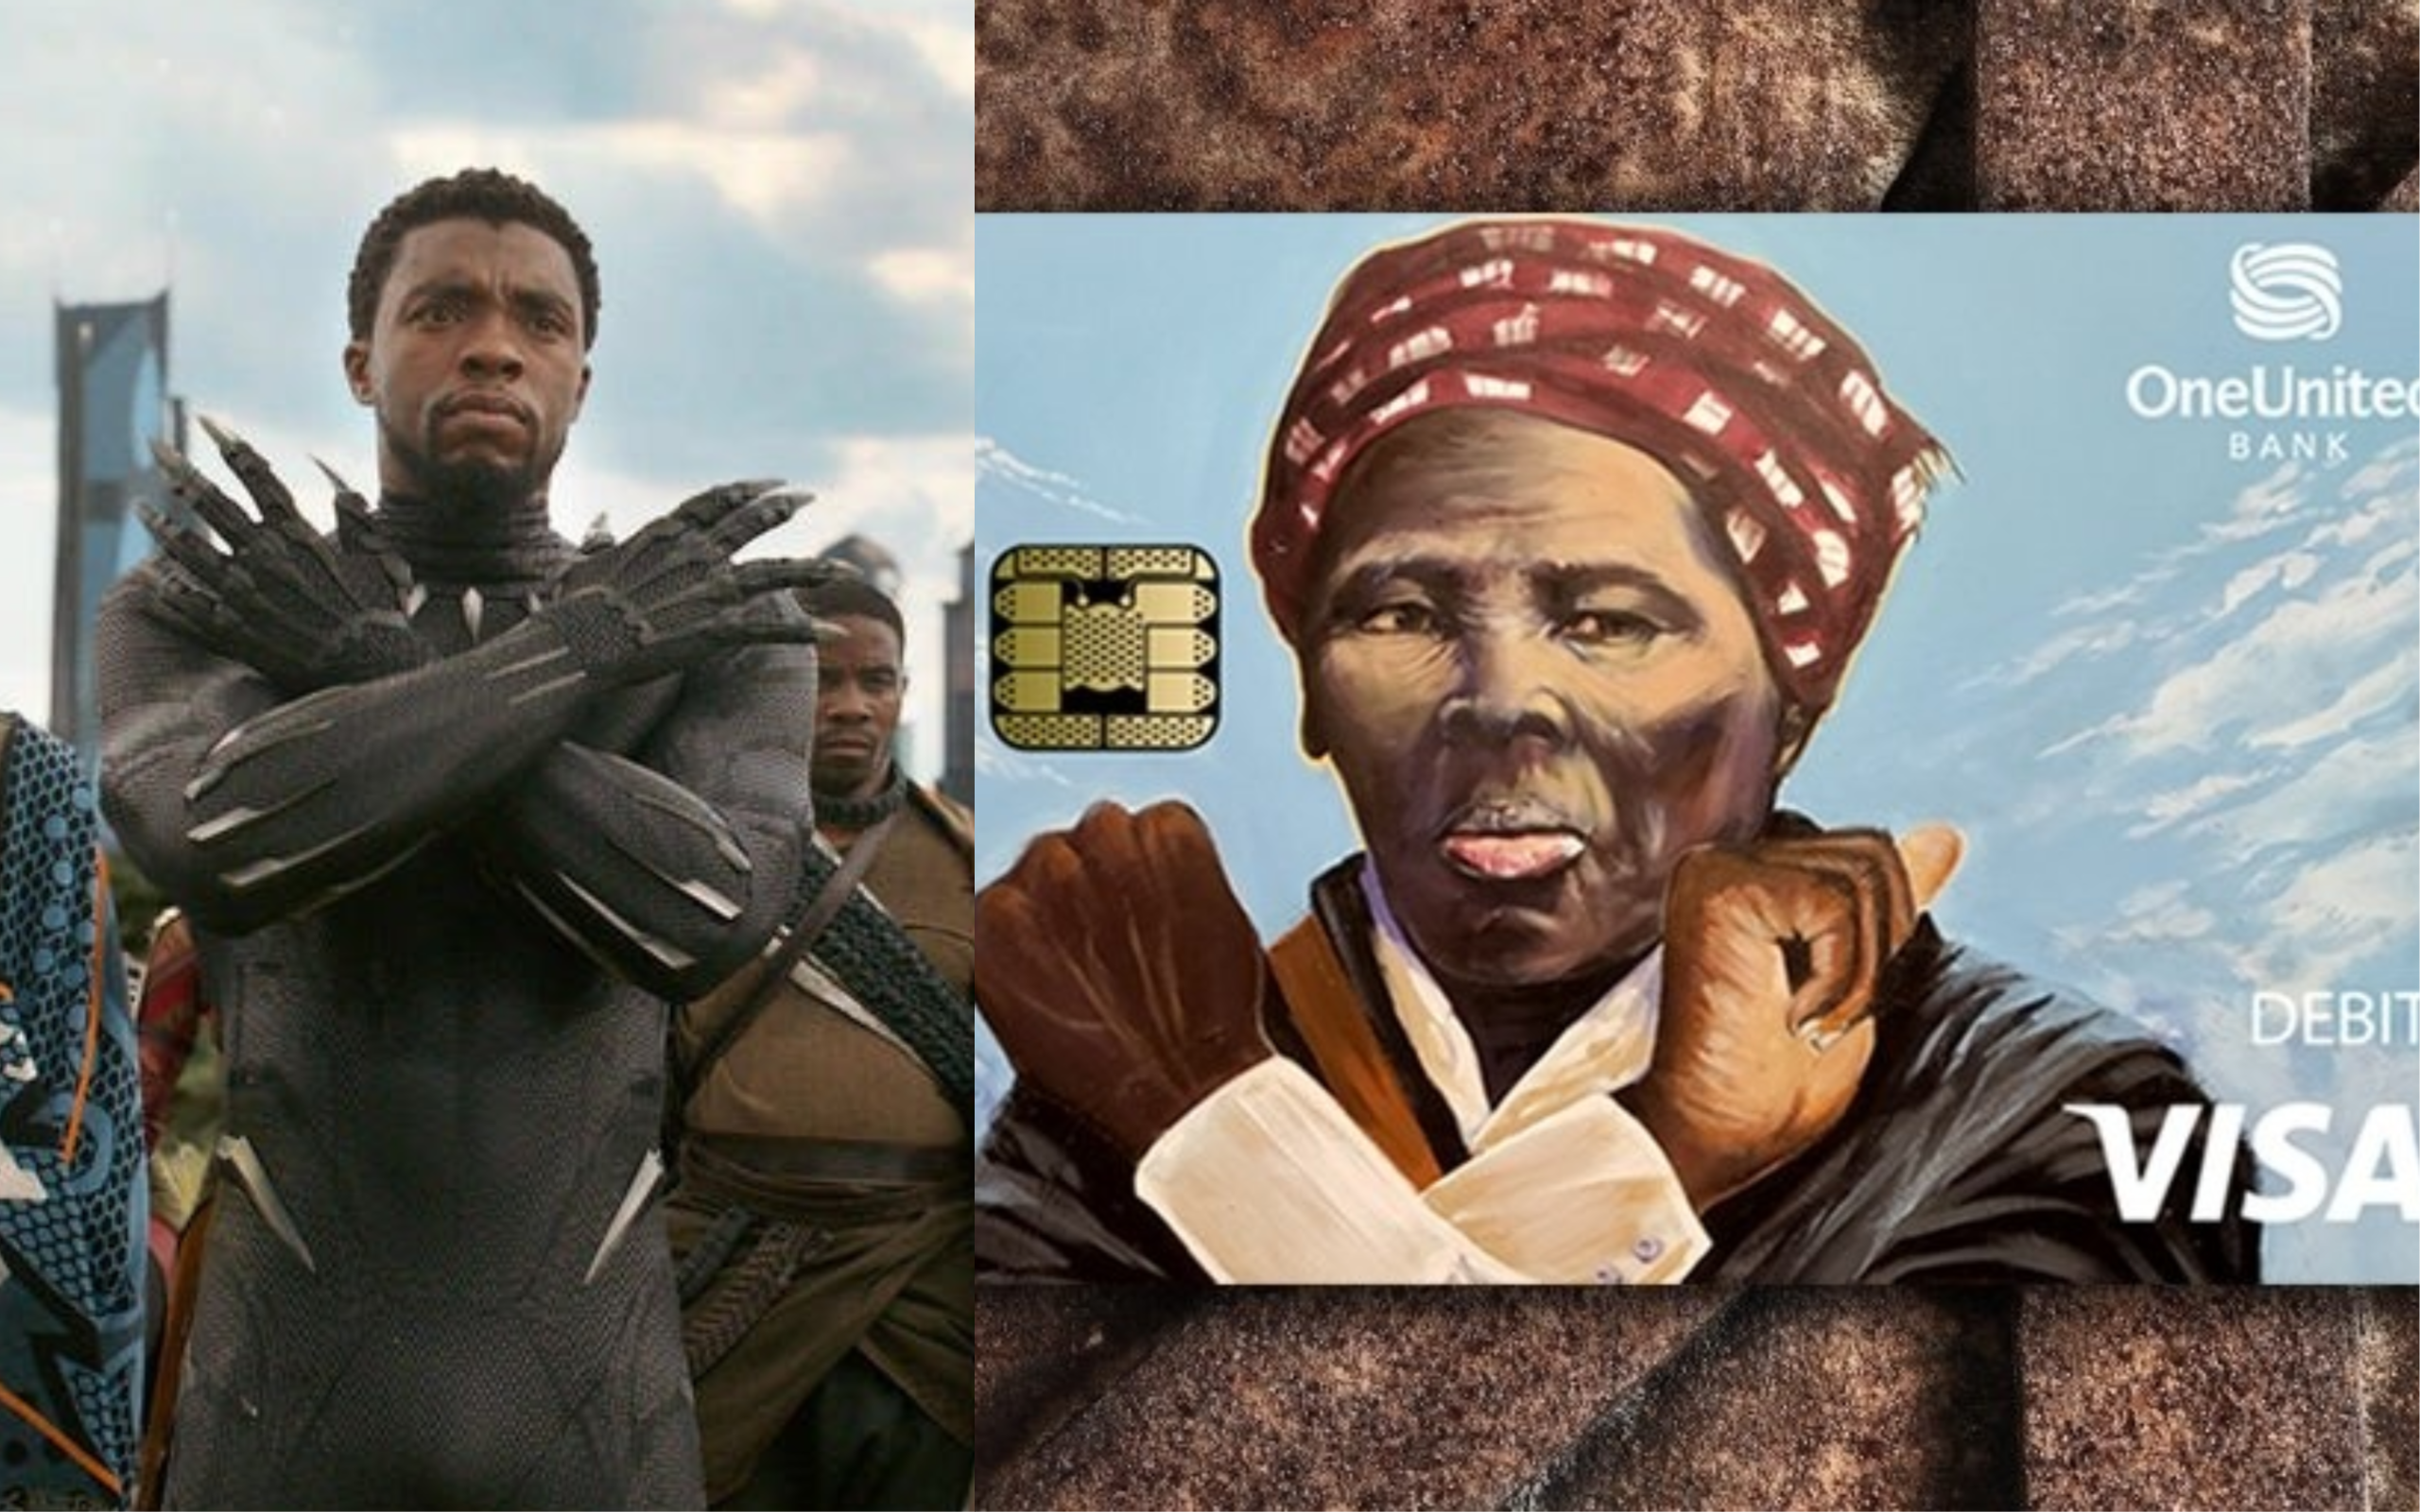 黑人廢奴主義運動家哈莉特．塔布曼在美國 VISA 卡上擺出 Wakanda Forever 手勢，但似乎引起了部分民眾的不滿